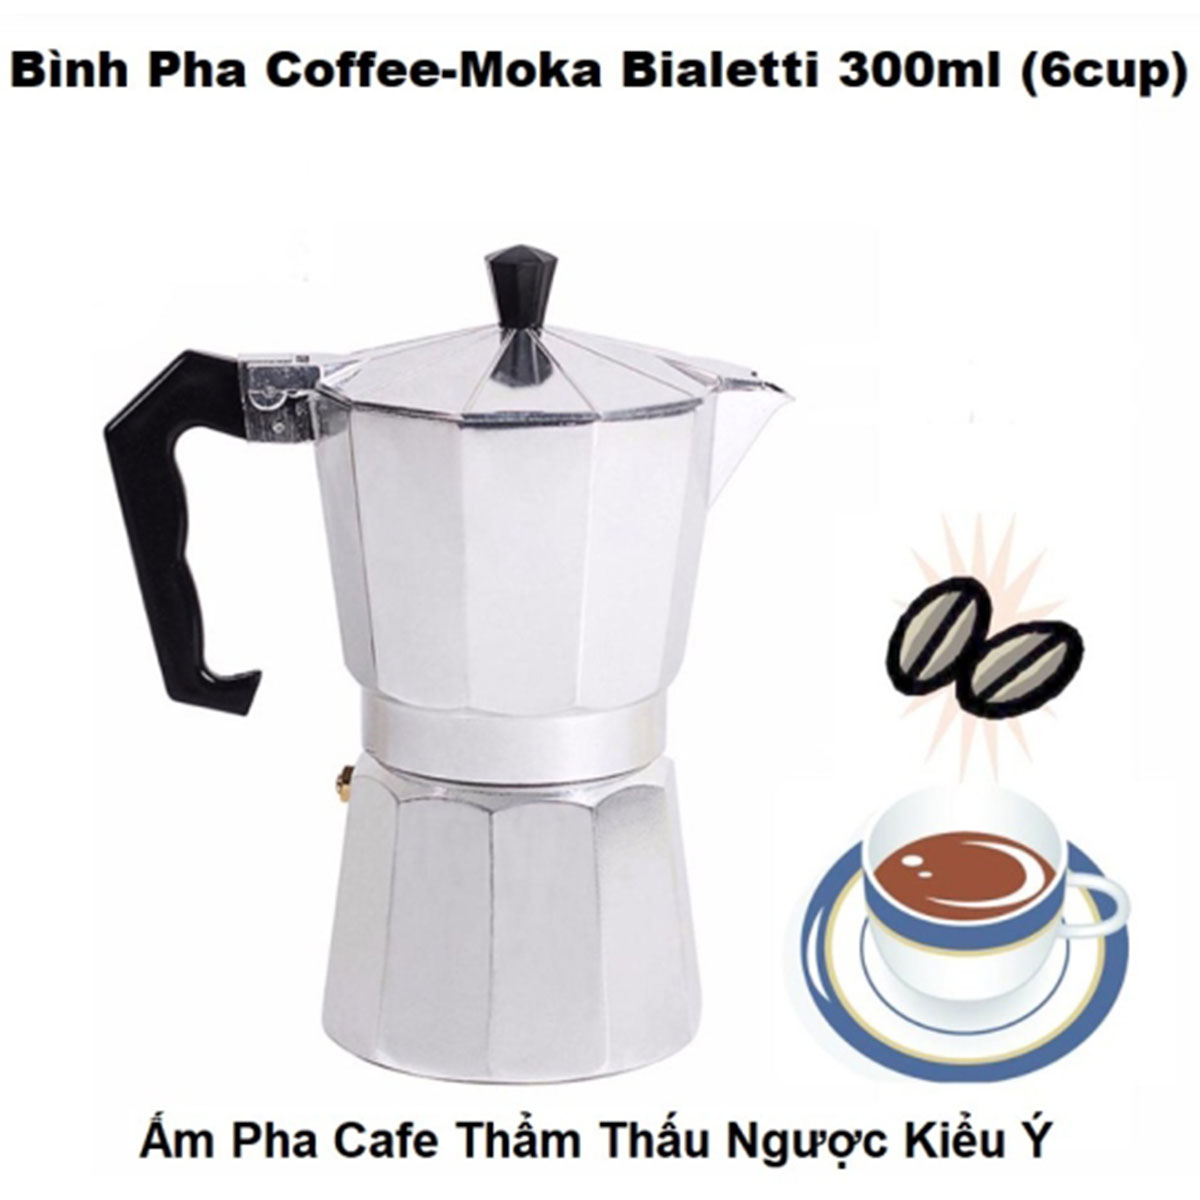 Ấm Pha Cafe Chuyên Nghiệp Moka 300Ml Hợp Kim Nhôm Giữ Nhiệt Tốt Kiểu Ý